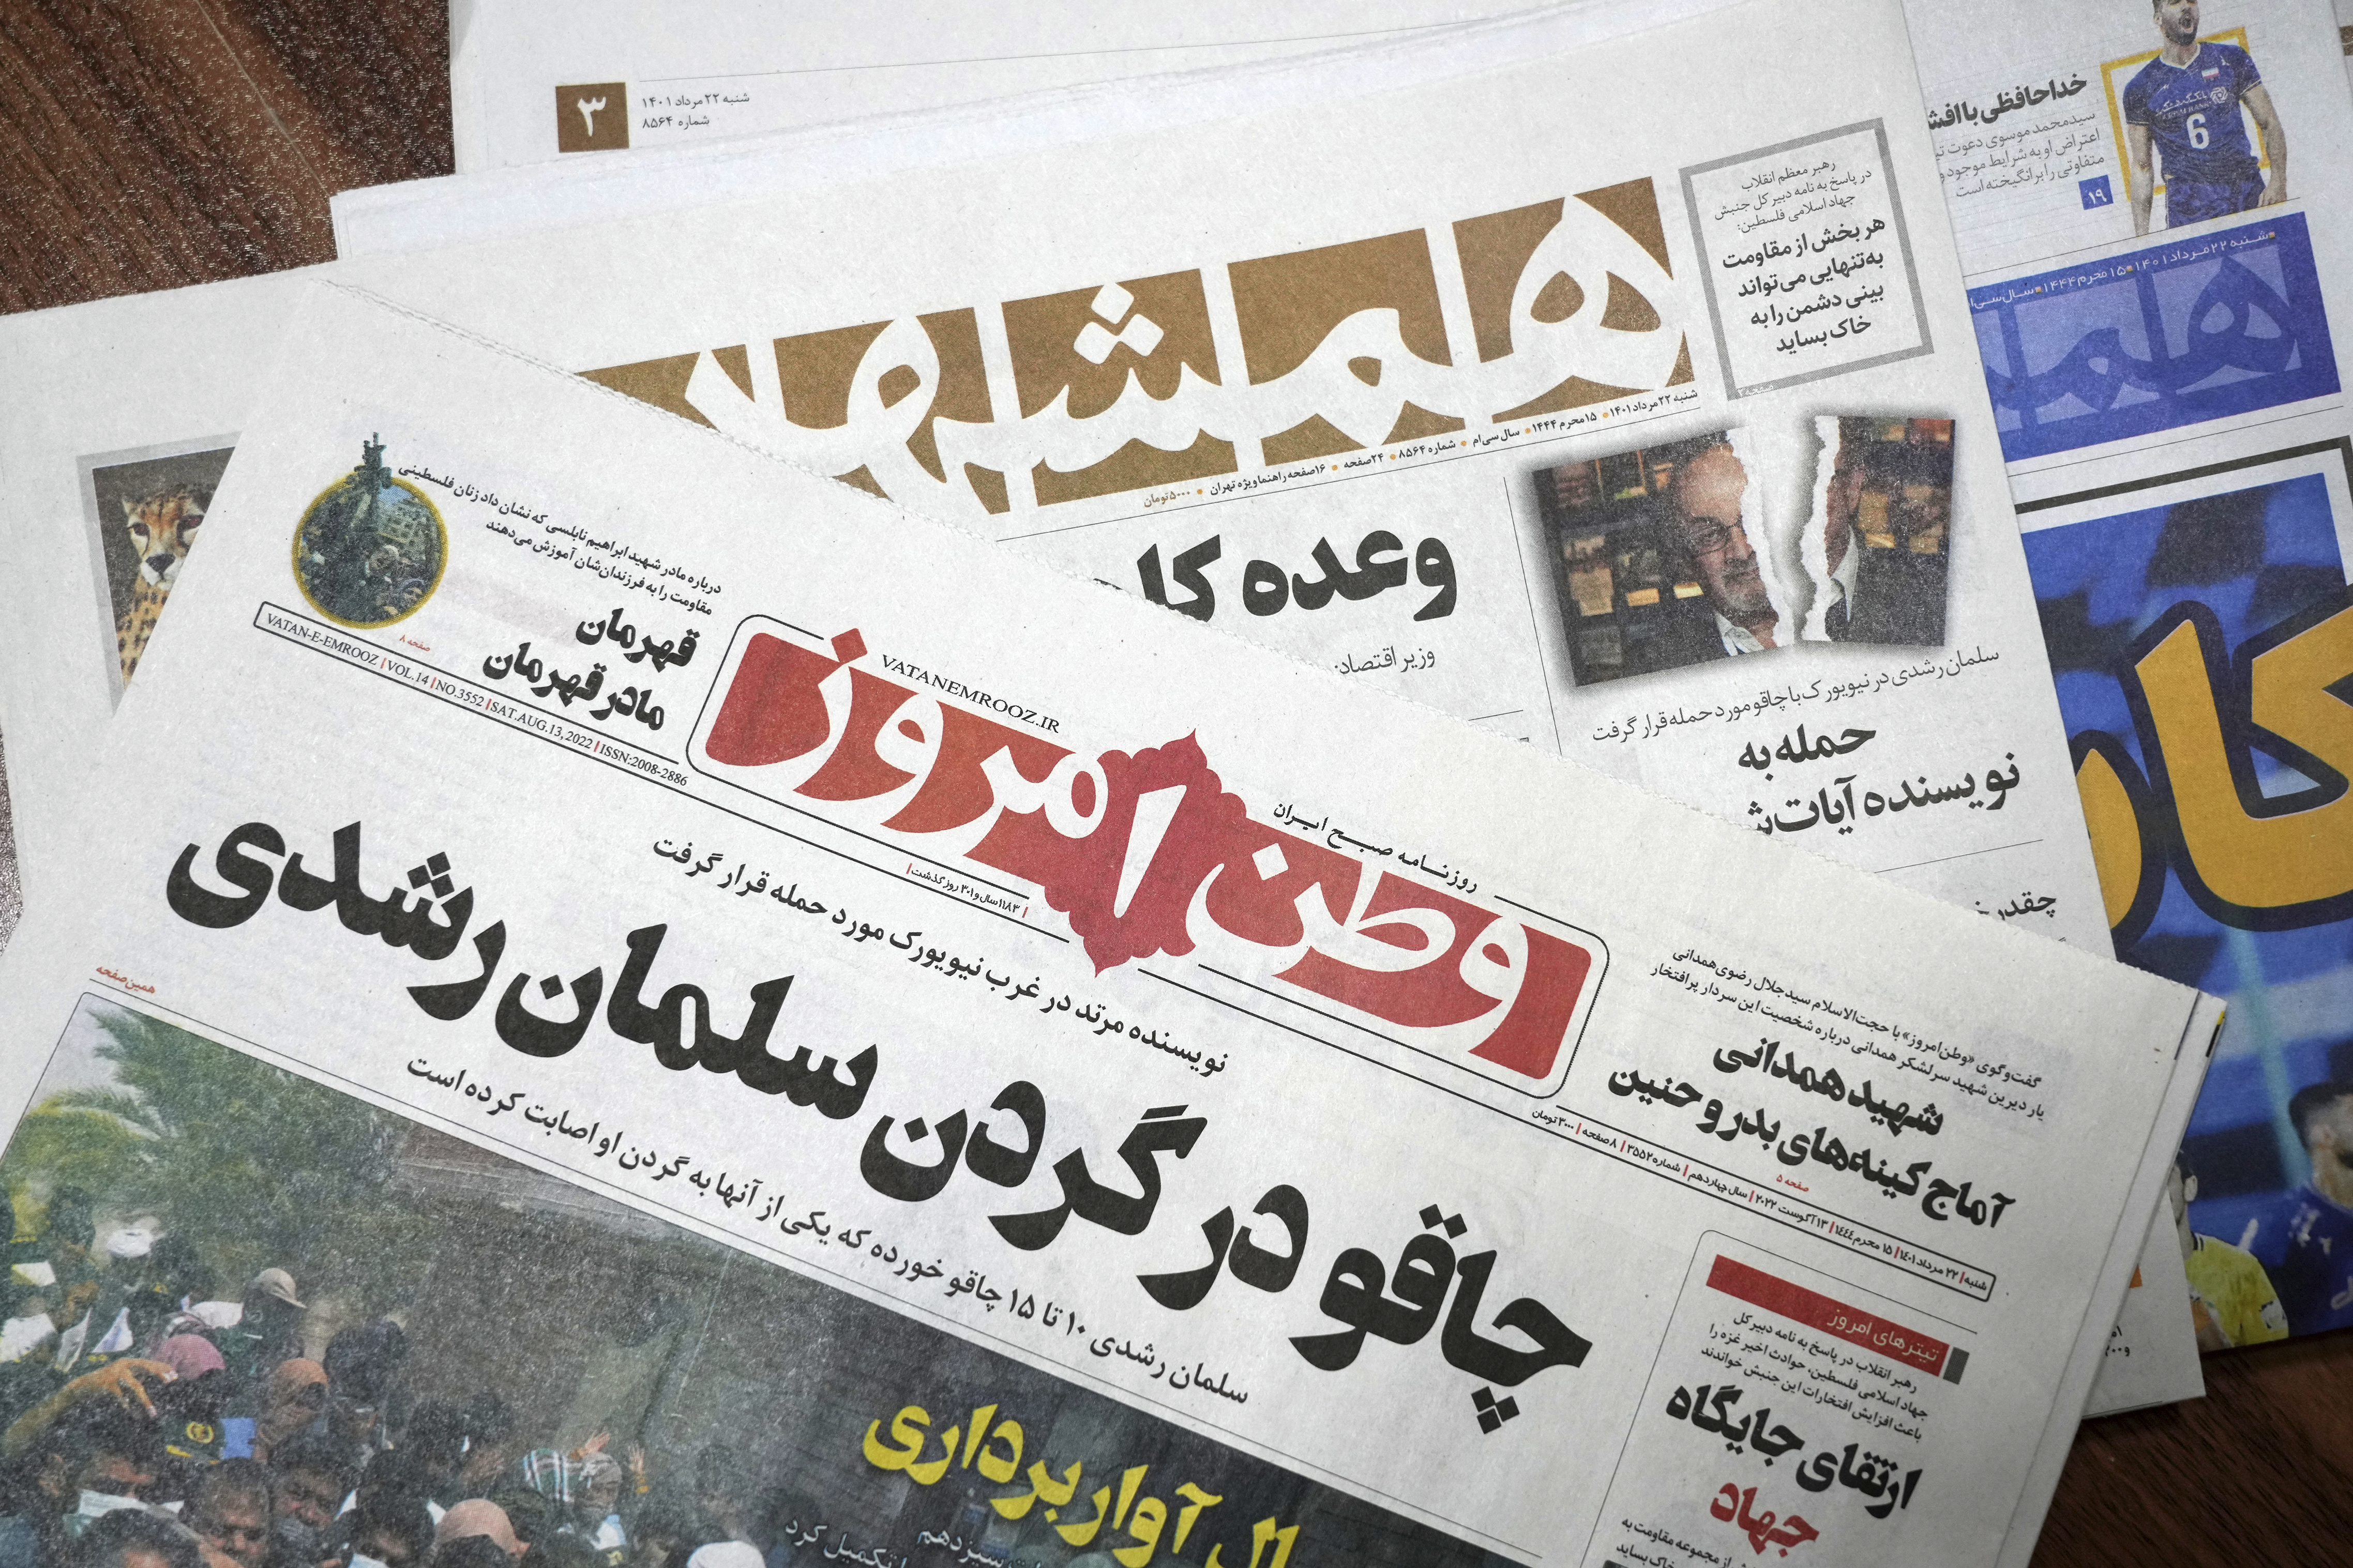 Alabanza, preocupación en Irán después del ataque de Rushdie; gobierno tranquilo